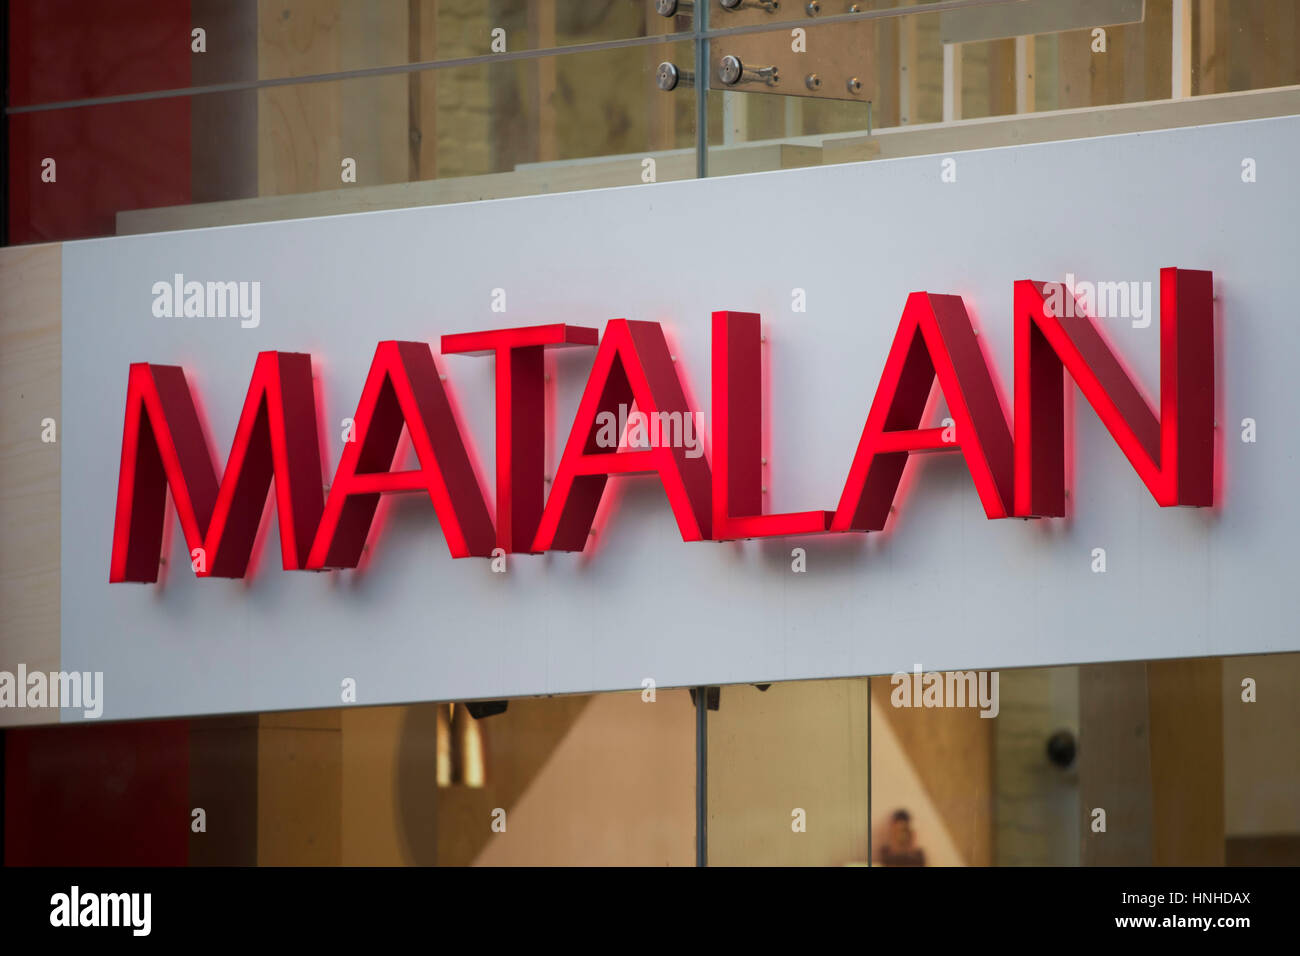 Matalan sign logo. Stock Photo